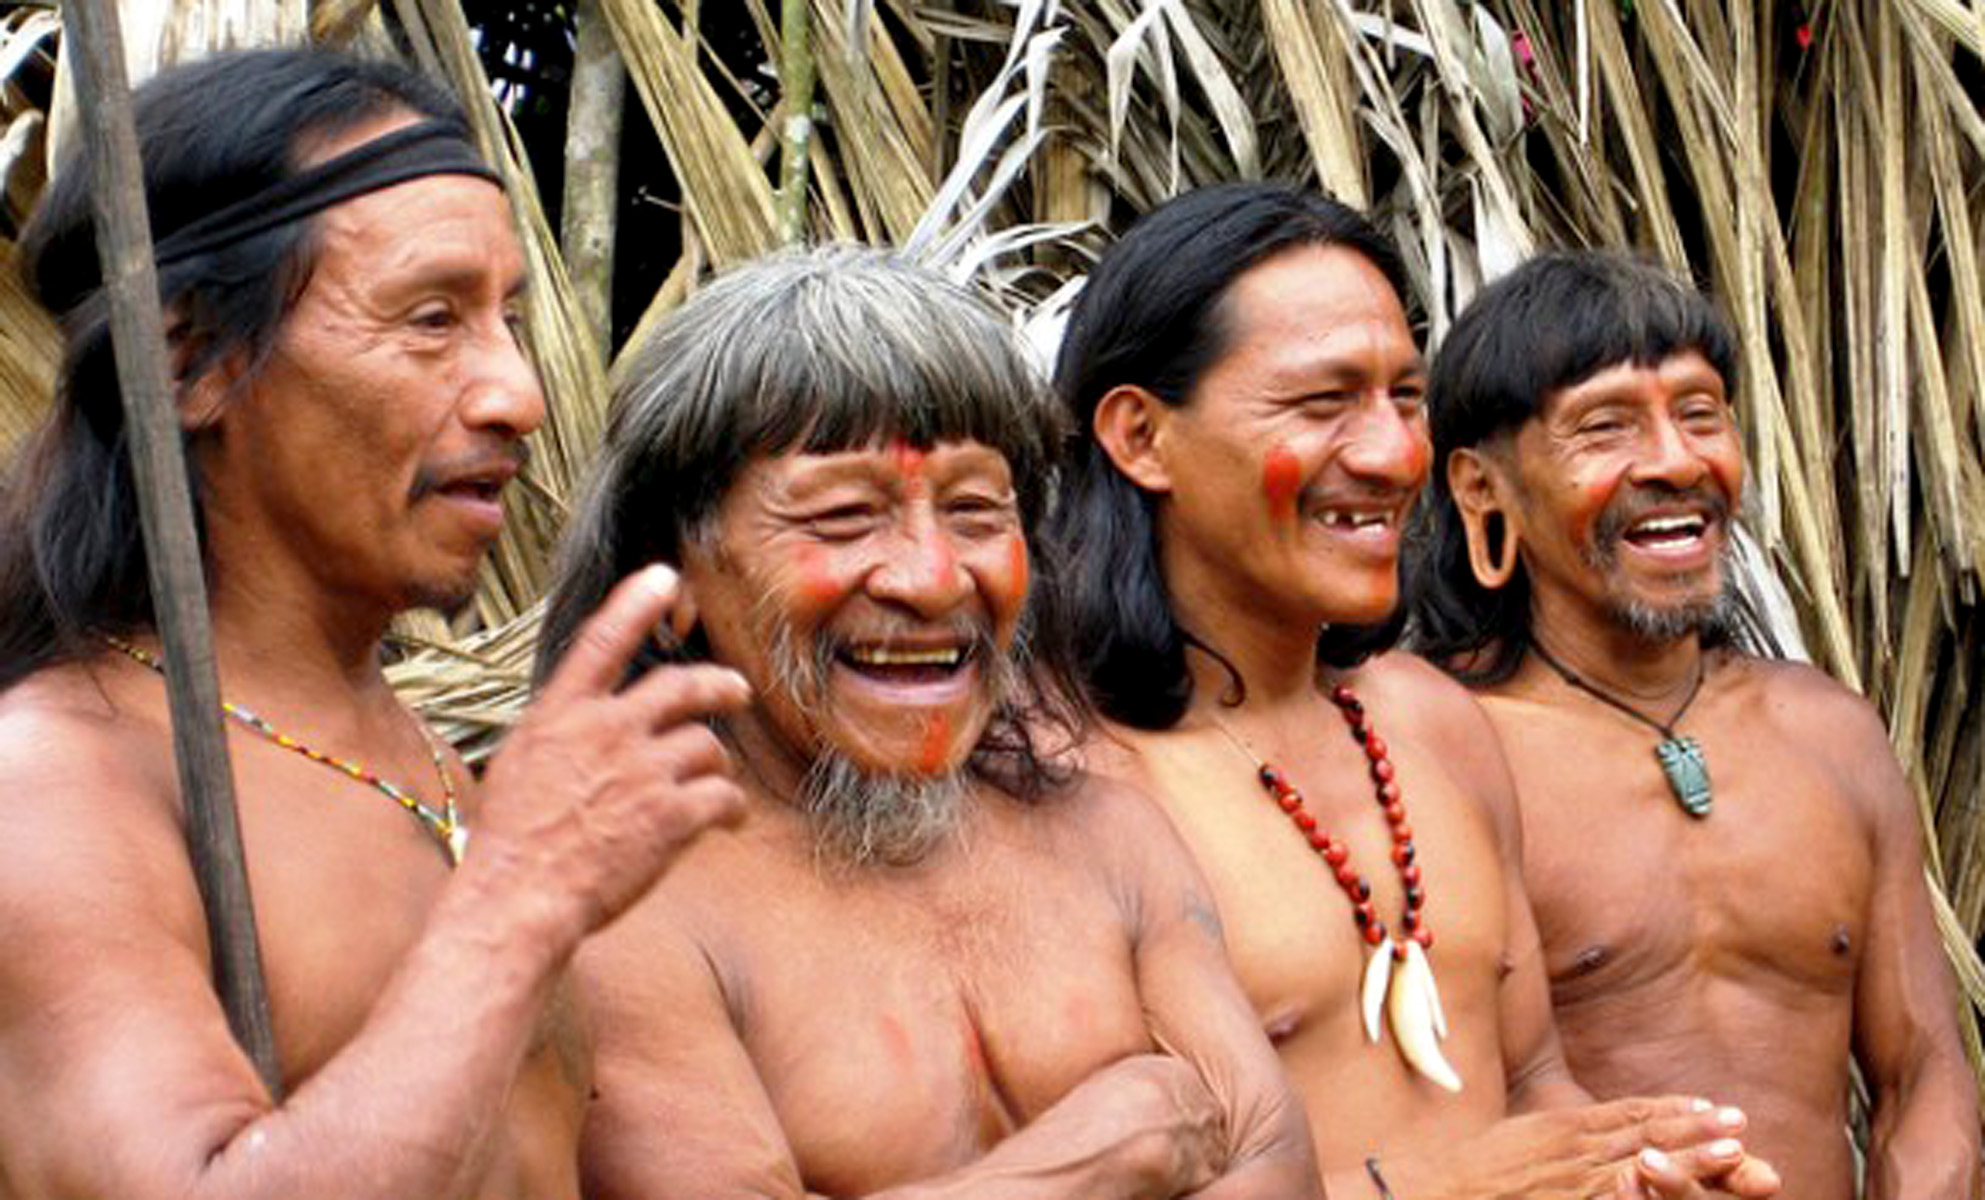 Members of the Waorani tribe in Ecuador's Amazon region.